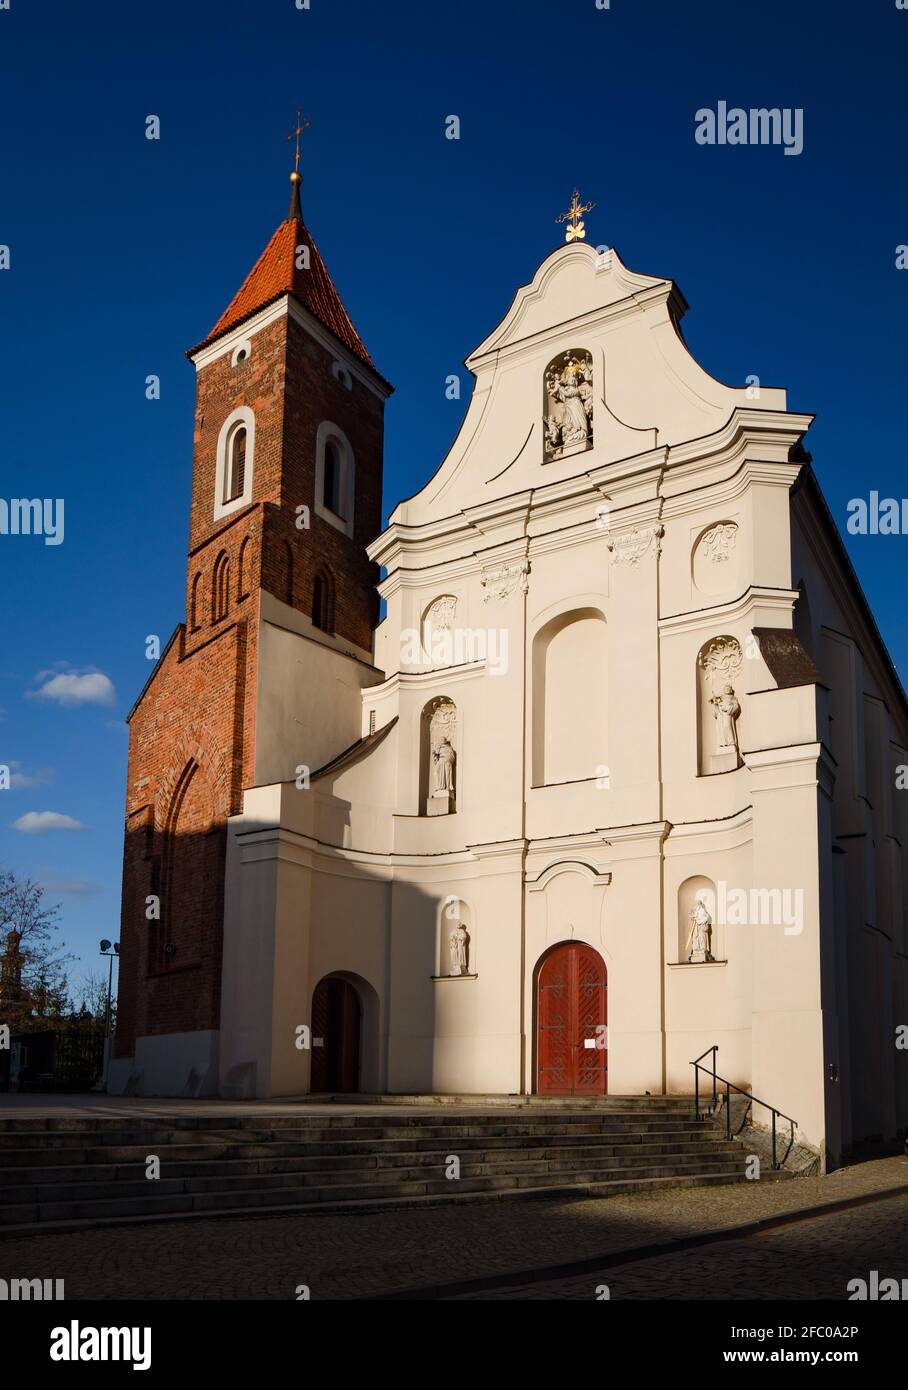 Chiesa francescana di Gniezno, Polonia. Architettura barocca nel centro storico. Foto Stock